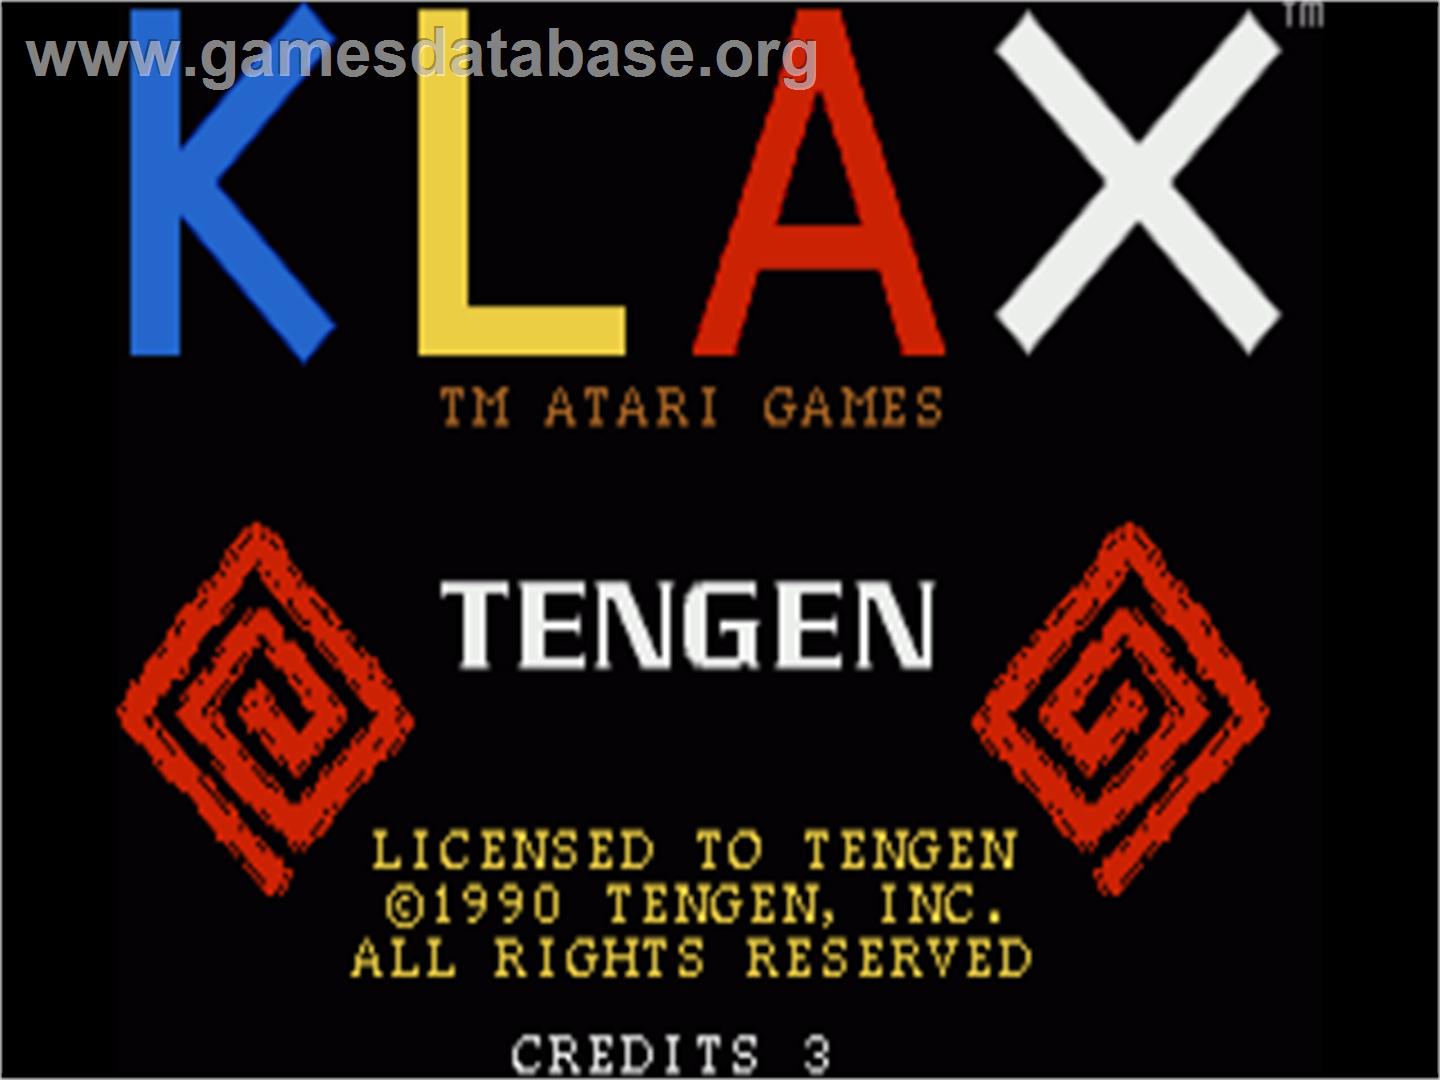 Klax - Commodore Amiga - Artwork - Title Screen